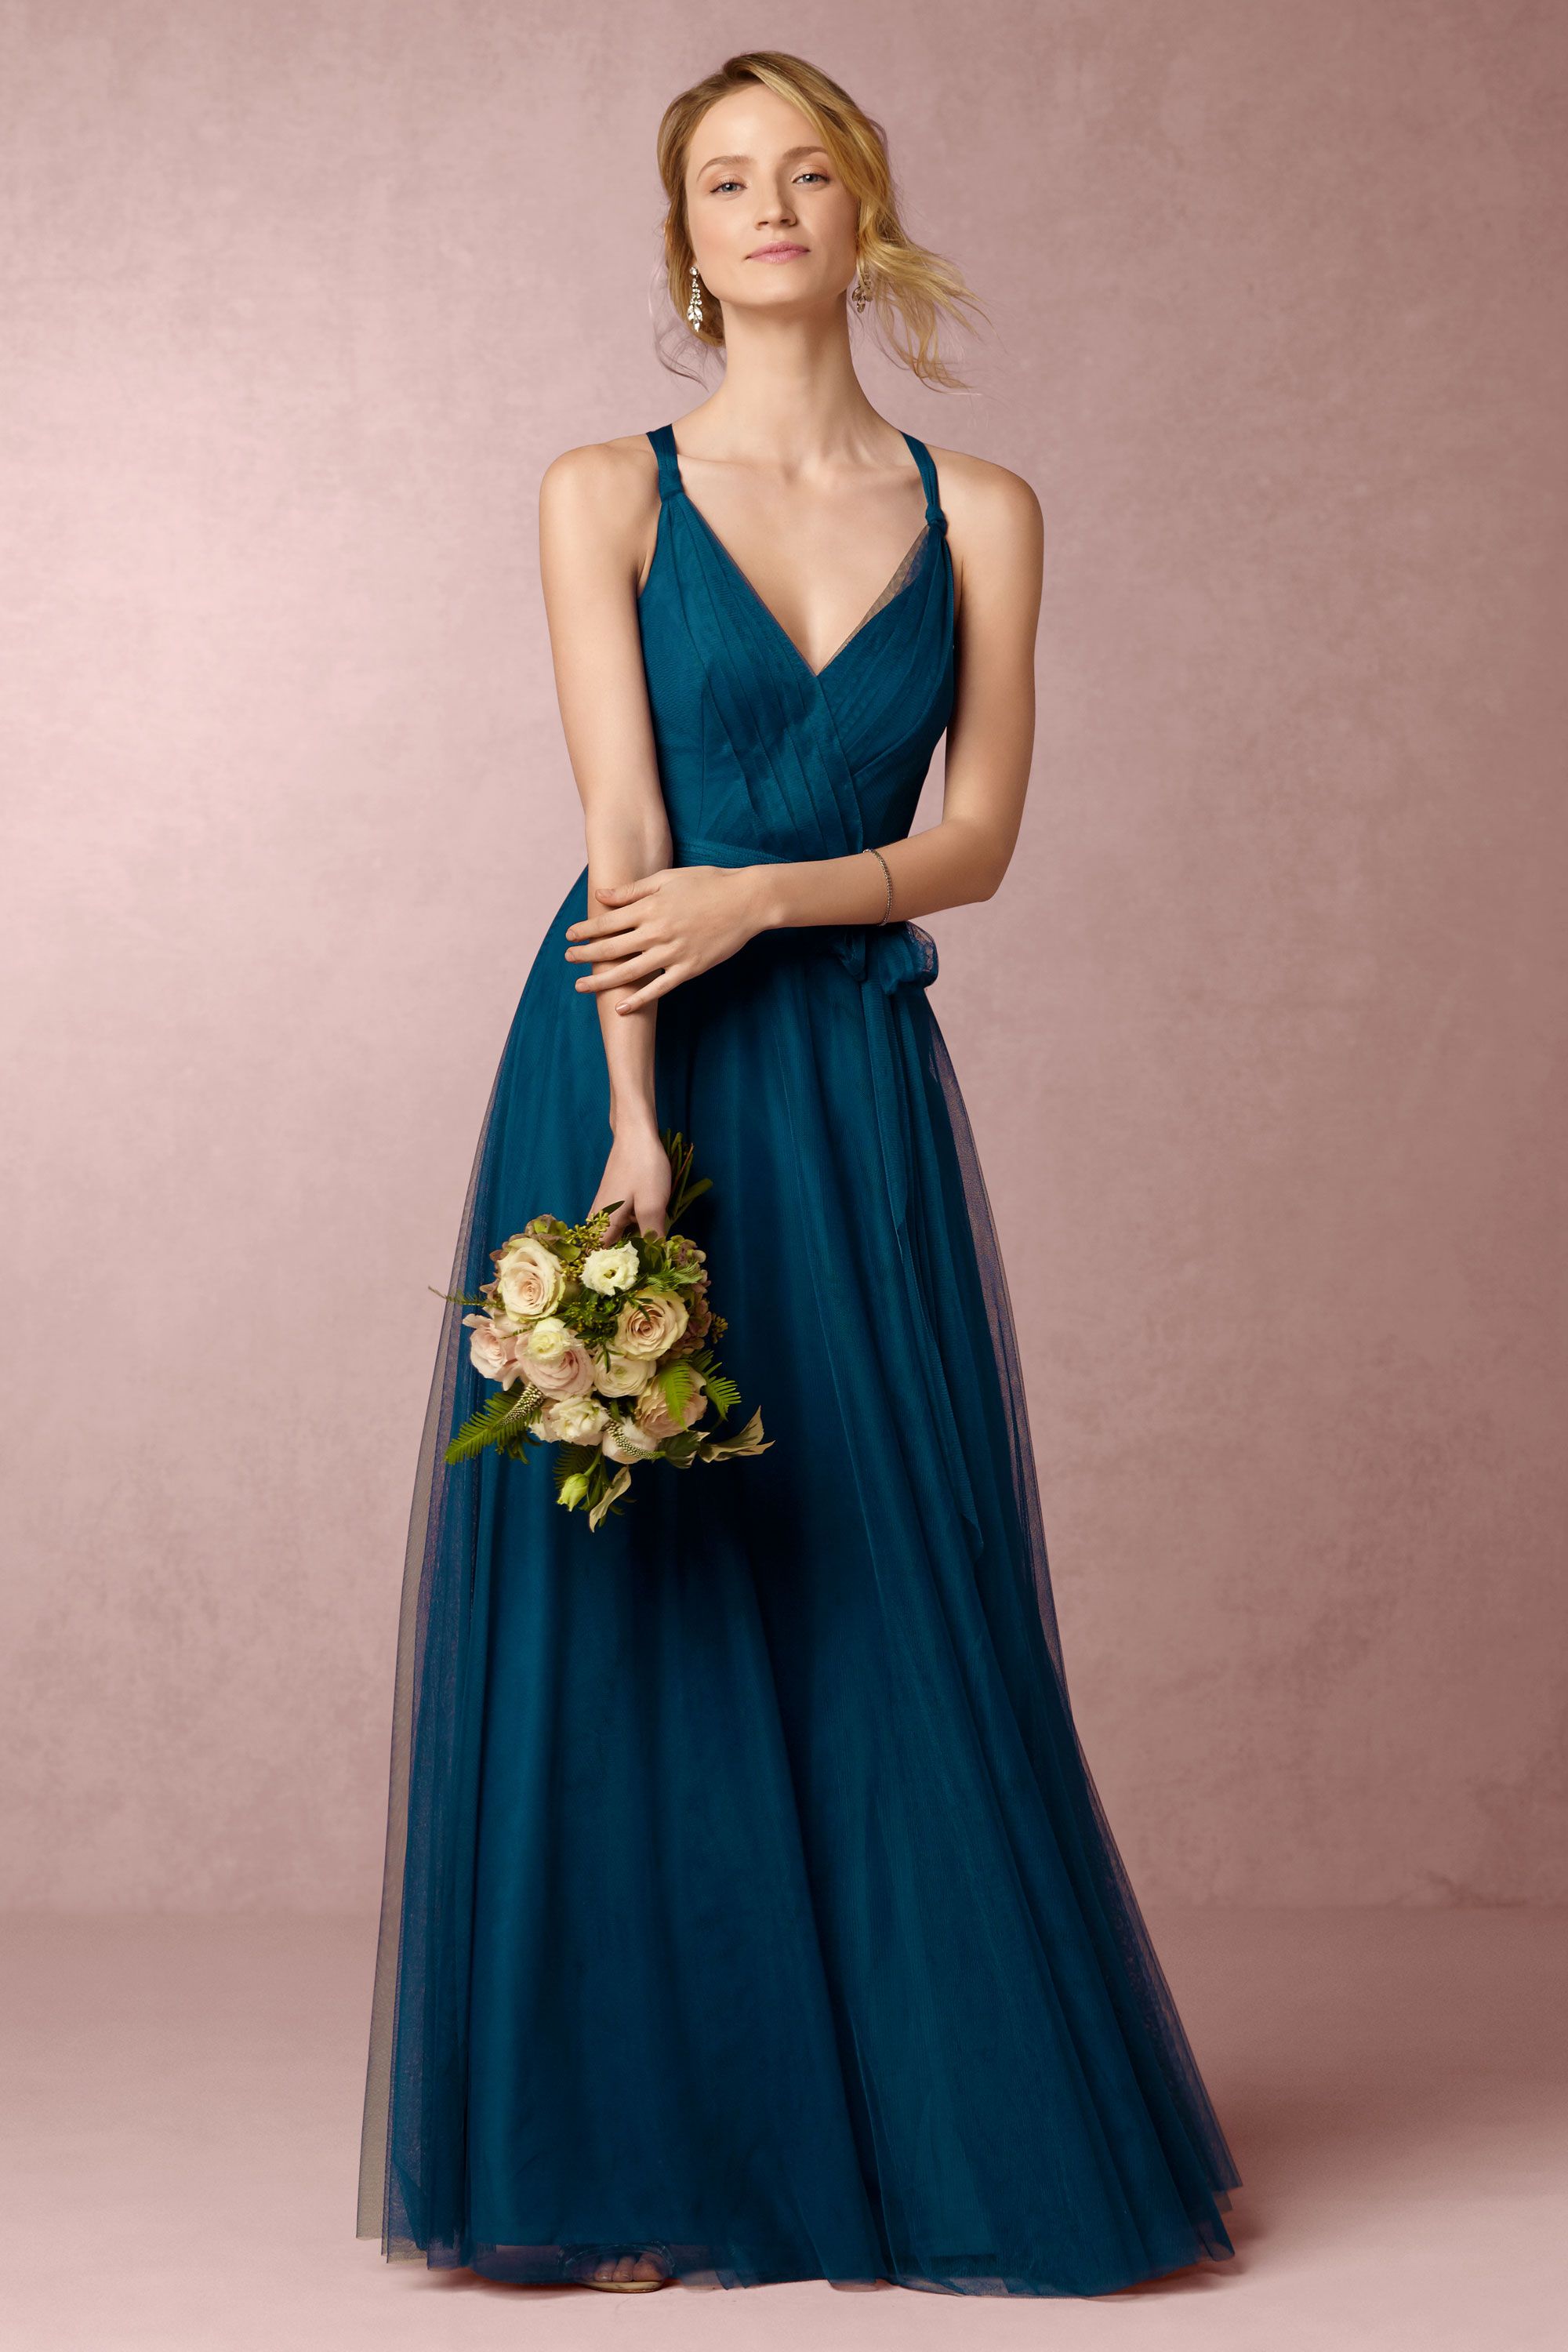 Zaria Dress in Sale Dresses | BHLDN